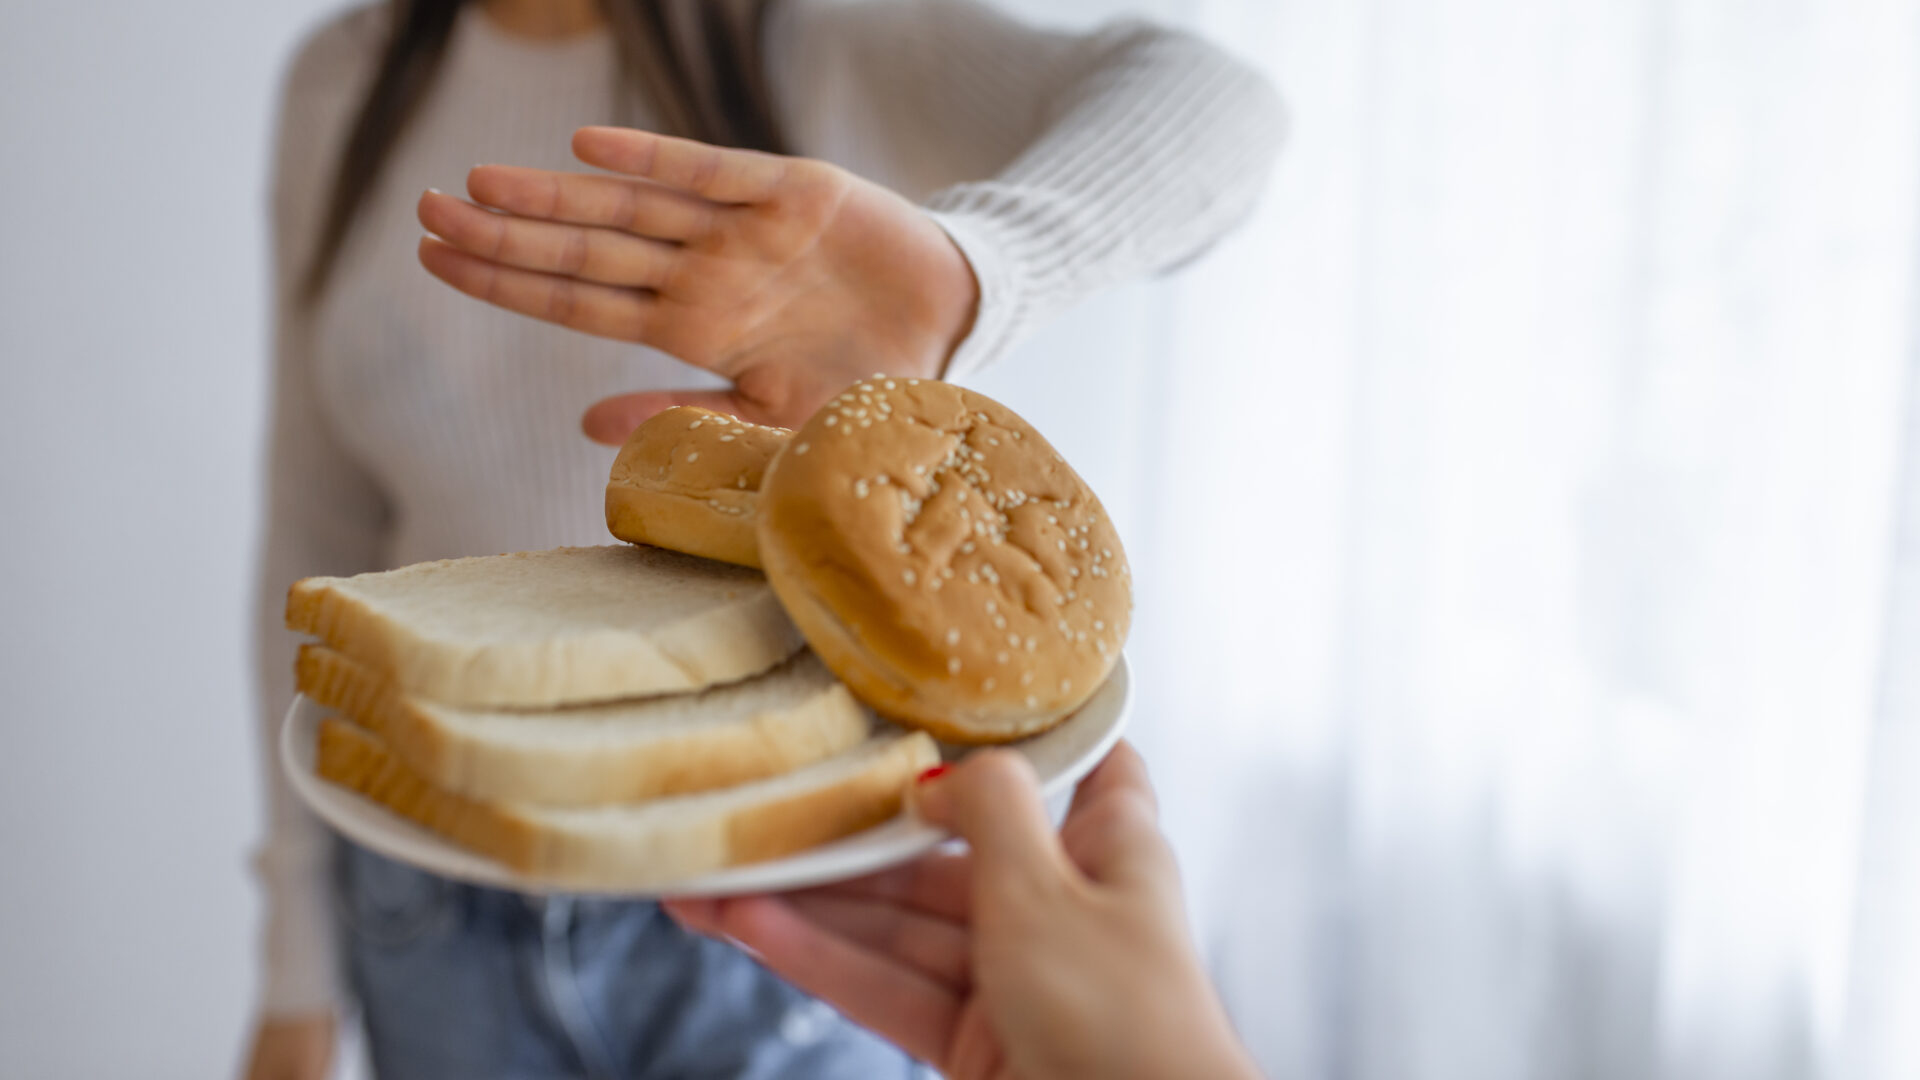 kobieta odmawiająca jedzenia białego chleba, celiakia